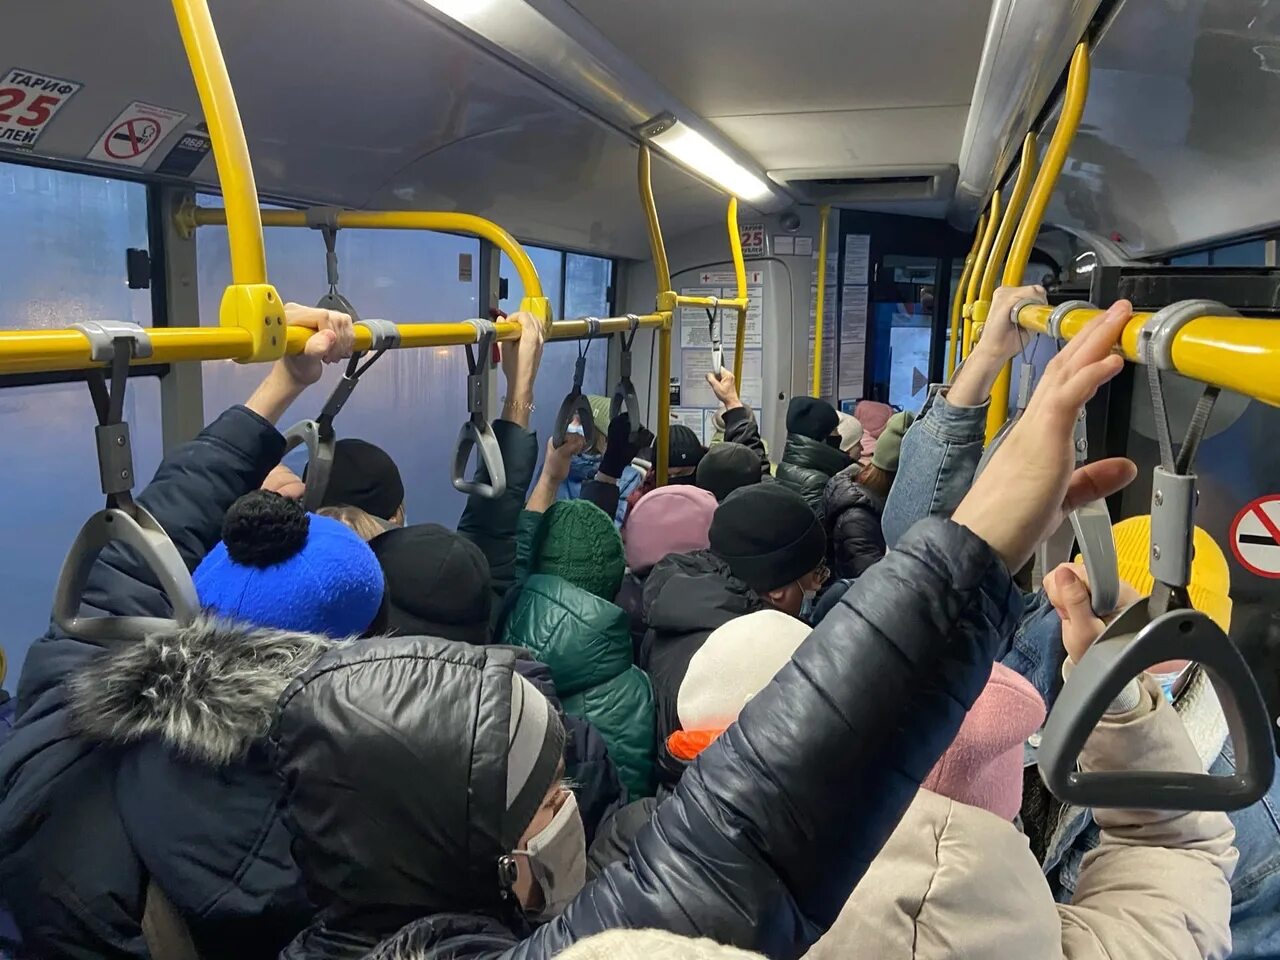 Https aif ru society. Автобус. Общественный транспорт в час пик. Люди в переполненном автобусе. Новый троллейбус.